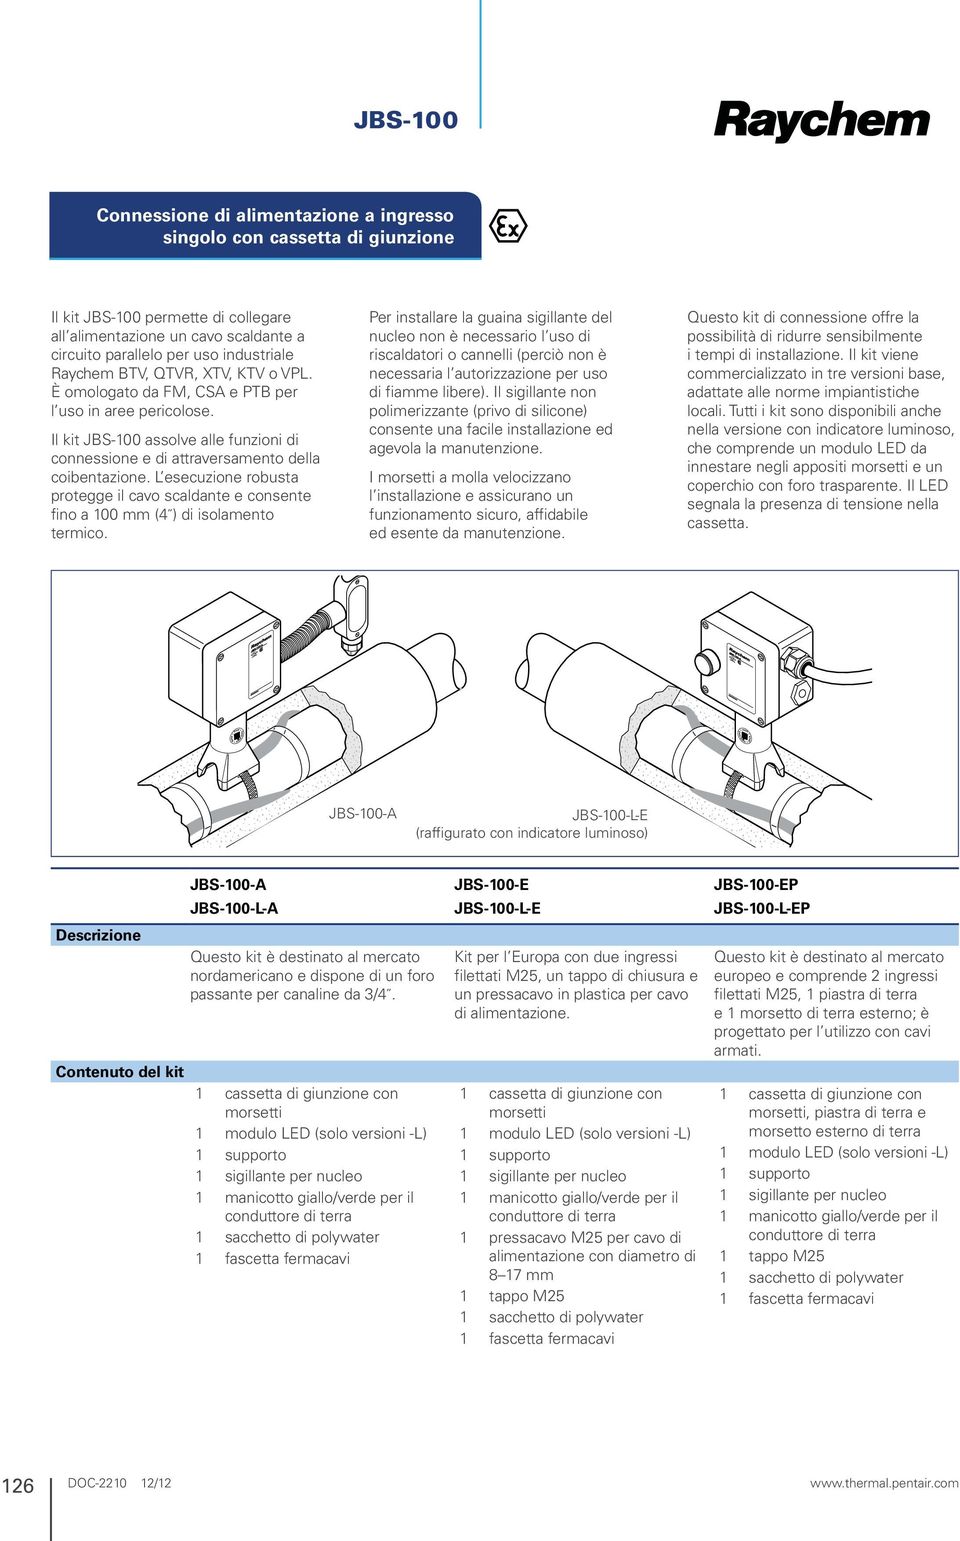 Il kit JBS-100 assolve alle funzioni di connessione e di attraversamento della coibentazione. L esecuzione robusta protegge il cavo scaldante e consente fino a 100 mm (4 ) di isolamento termico.